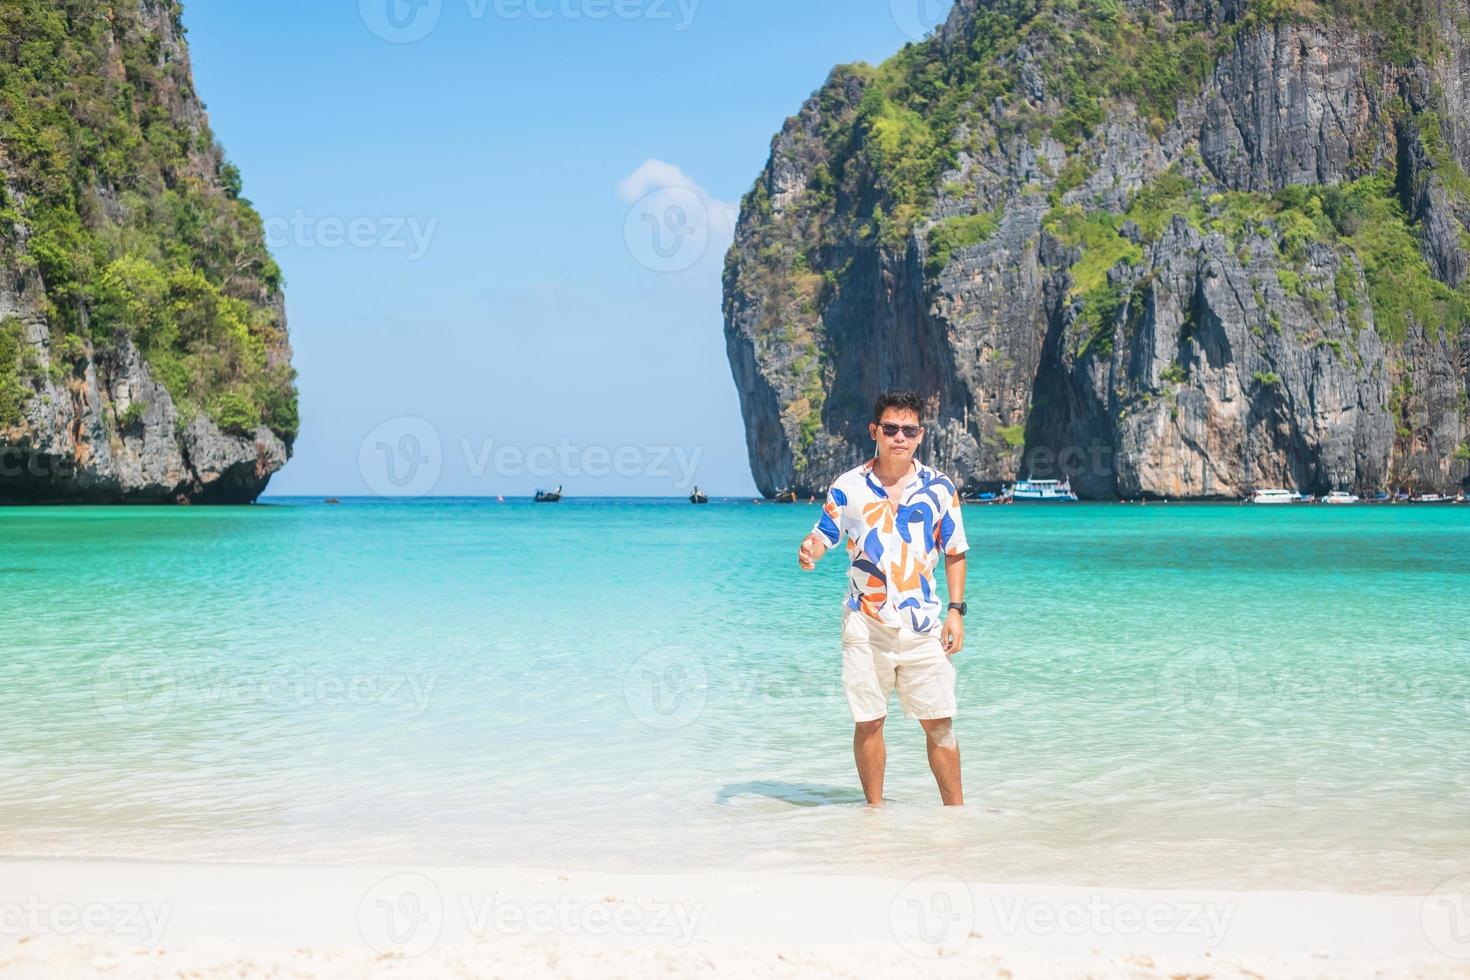 gelukkige toeristenmens bij maya bay-strand op phi phi-eiland, krabi, thailand. mijlpaal, bestemming Zuidoost-Azië reizen, vakantie en vakantieconcept foto